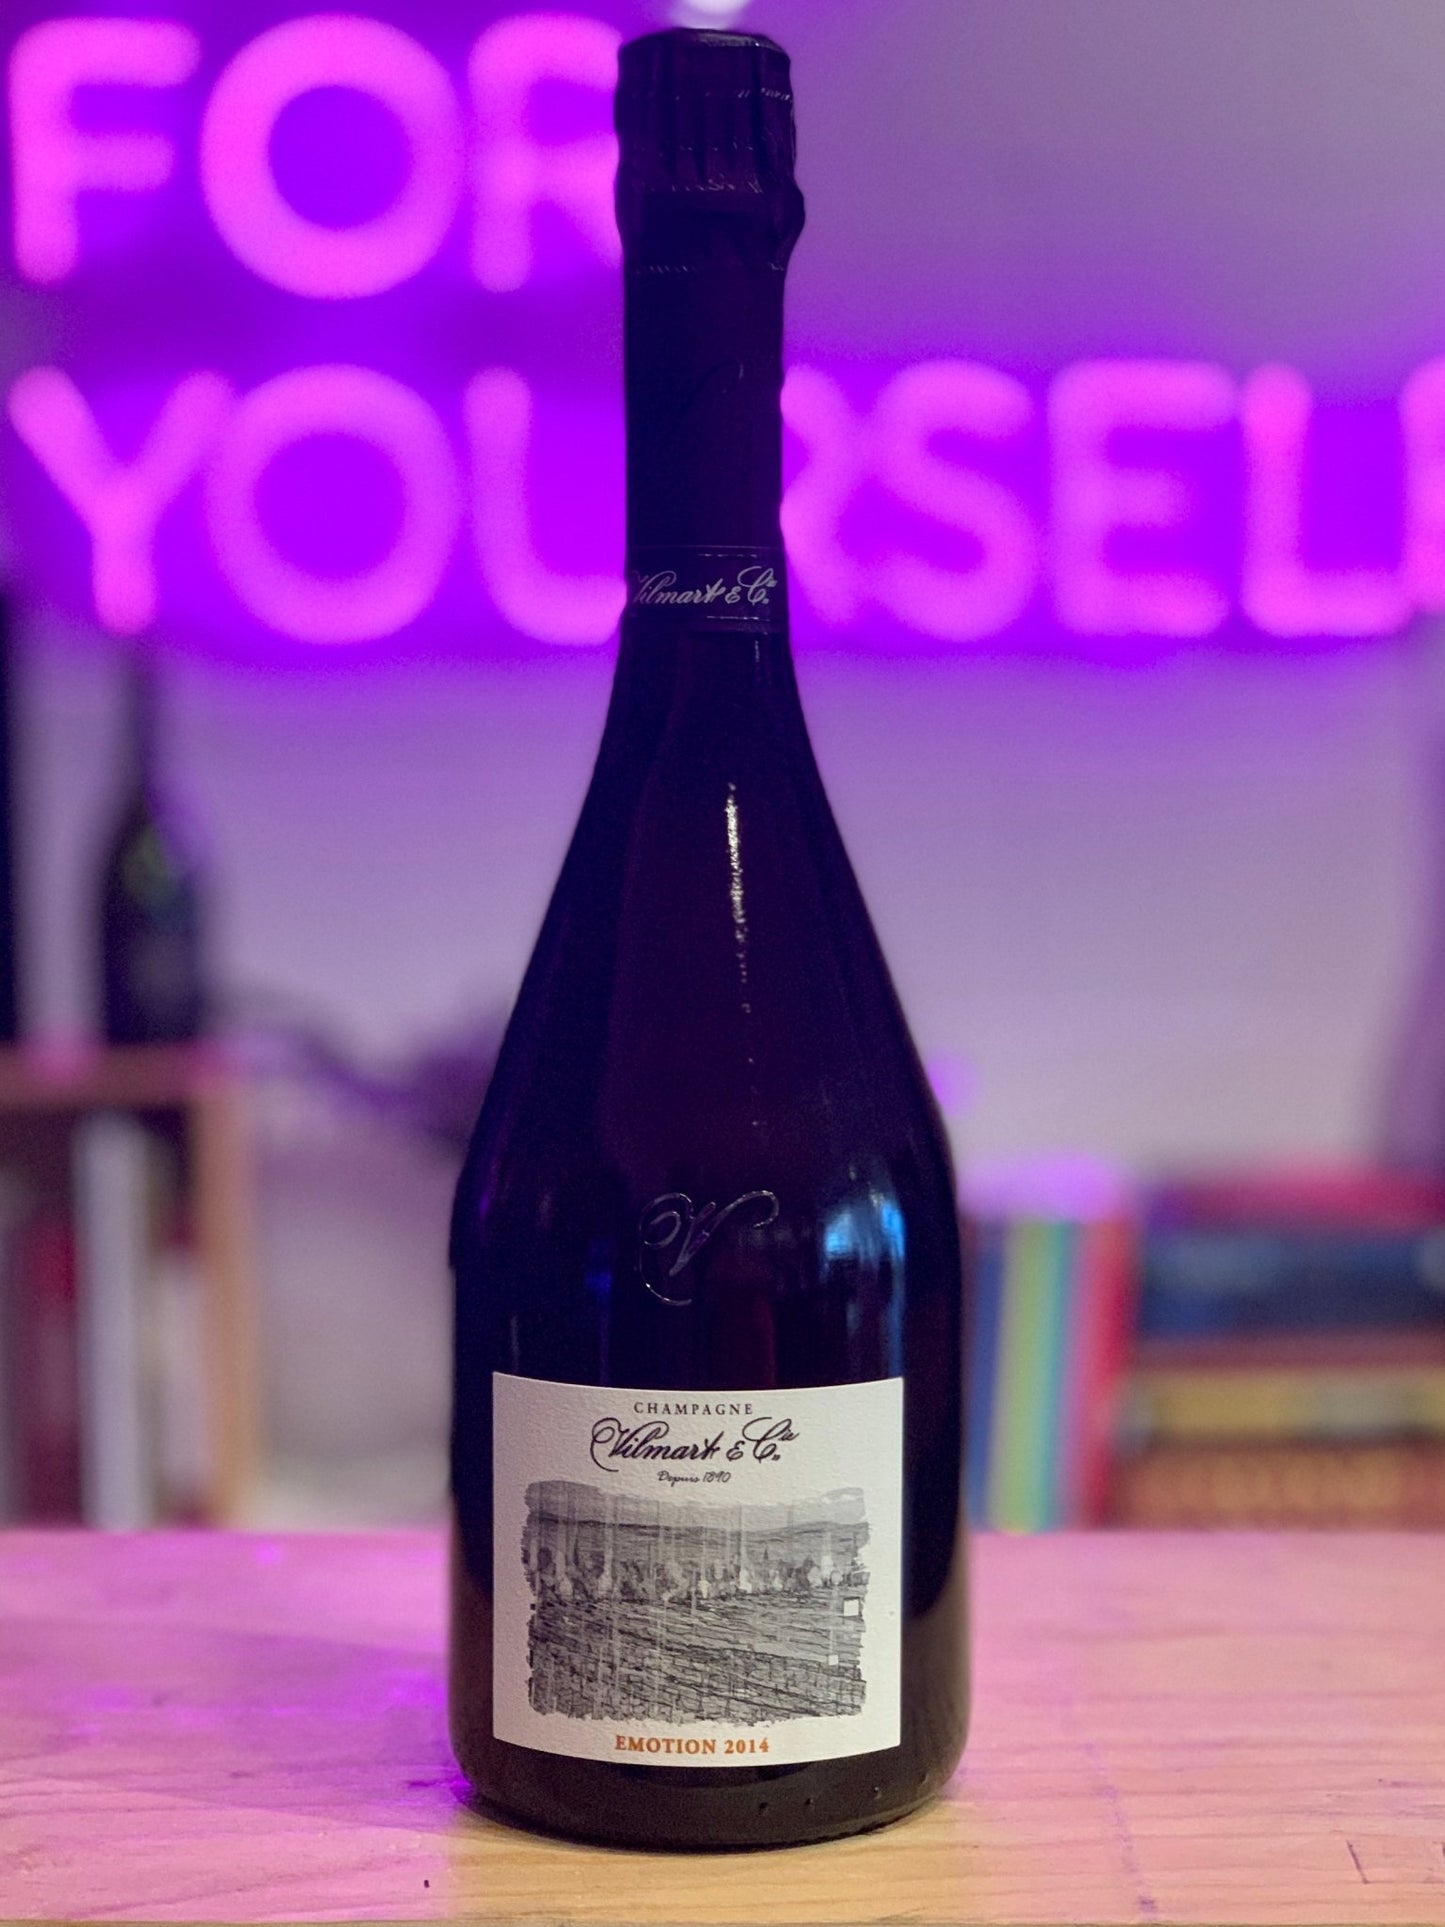 Vilmart & Cie 2014 'Emotion' Brut Rosé, Champagne, France - DECANTsf